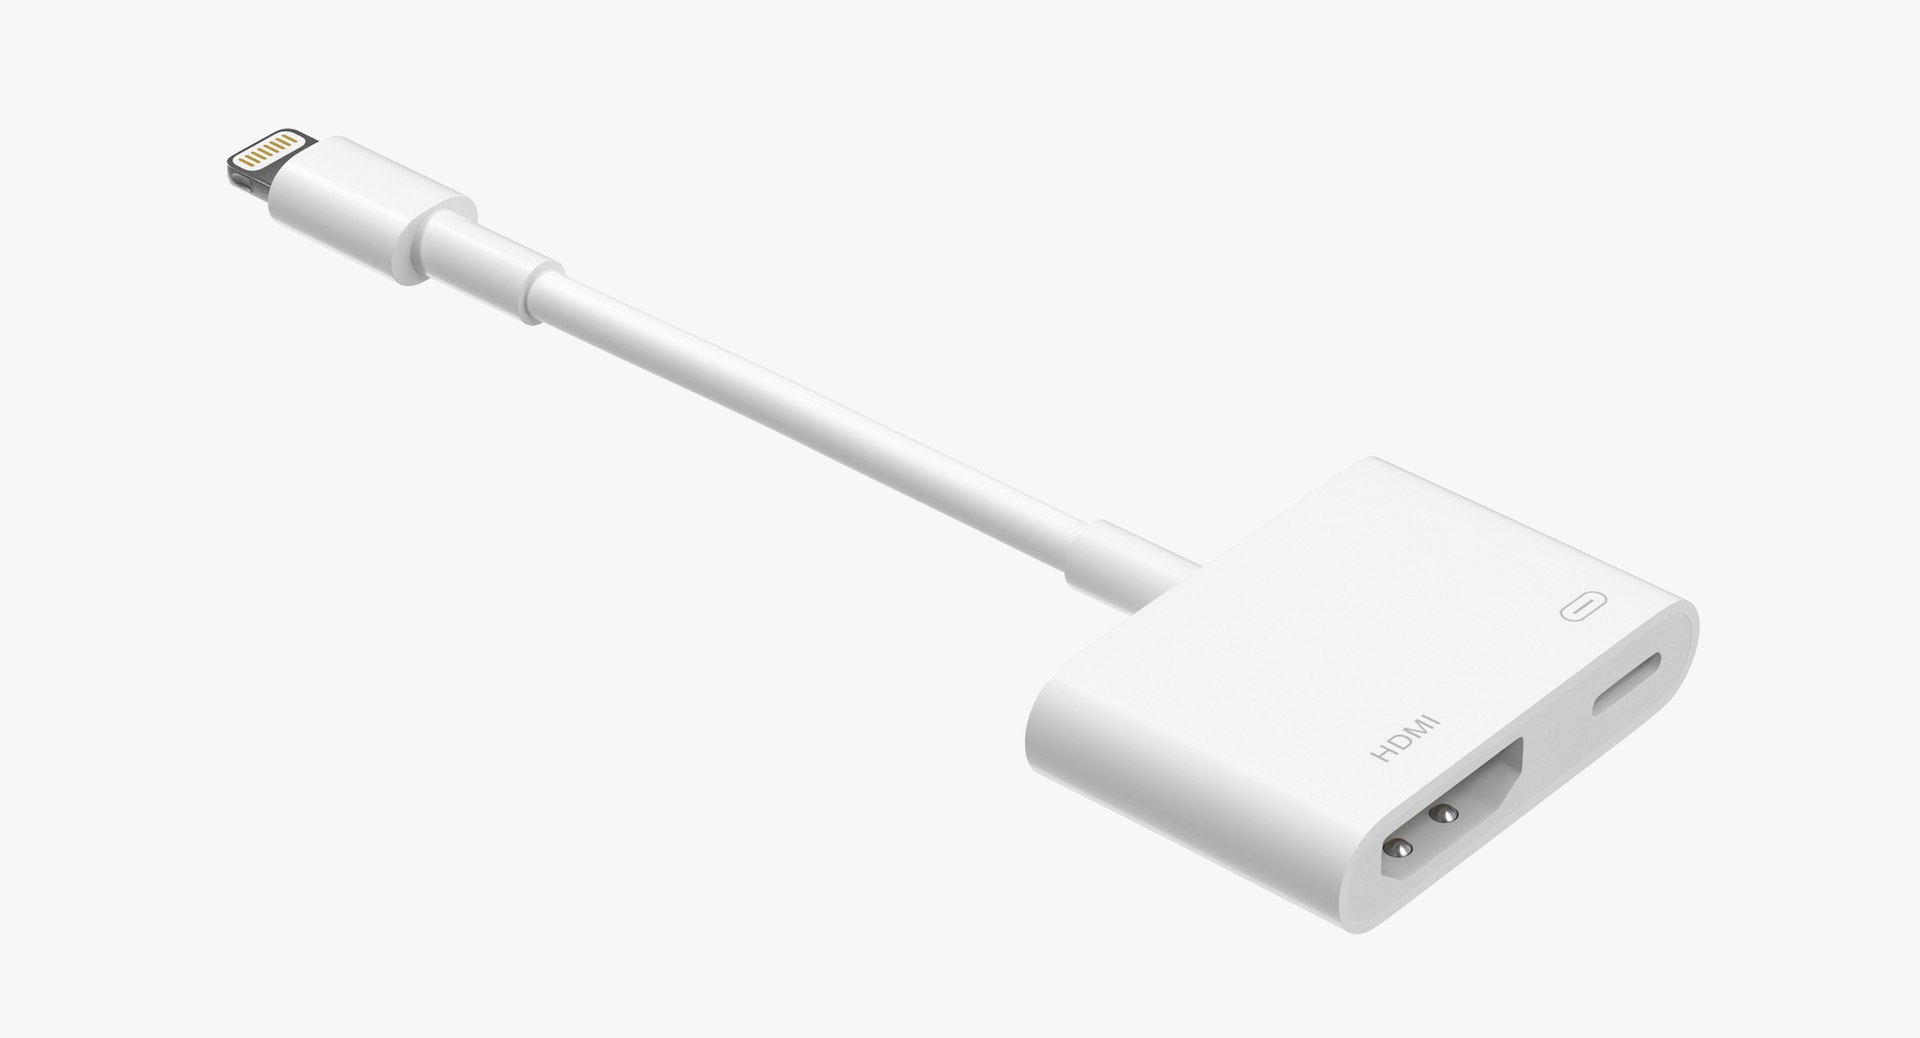  Apple Lightning to Digital AV Adapter : Electronics